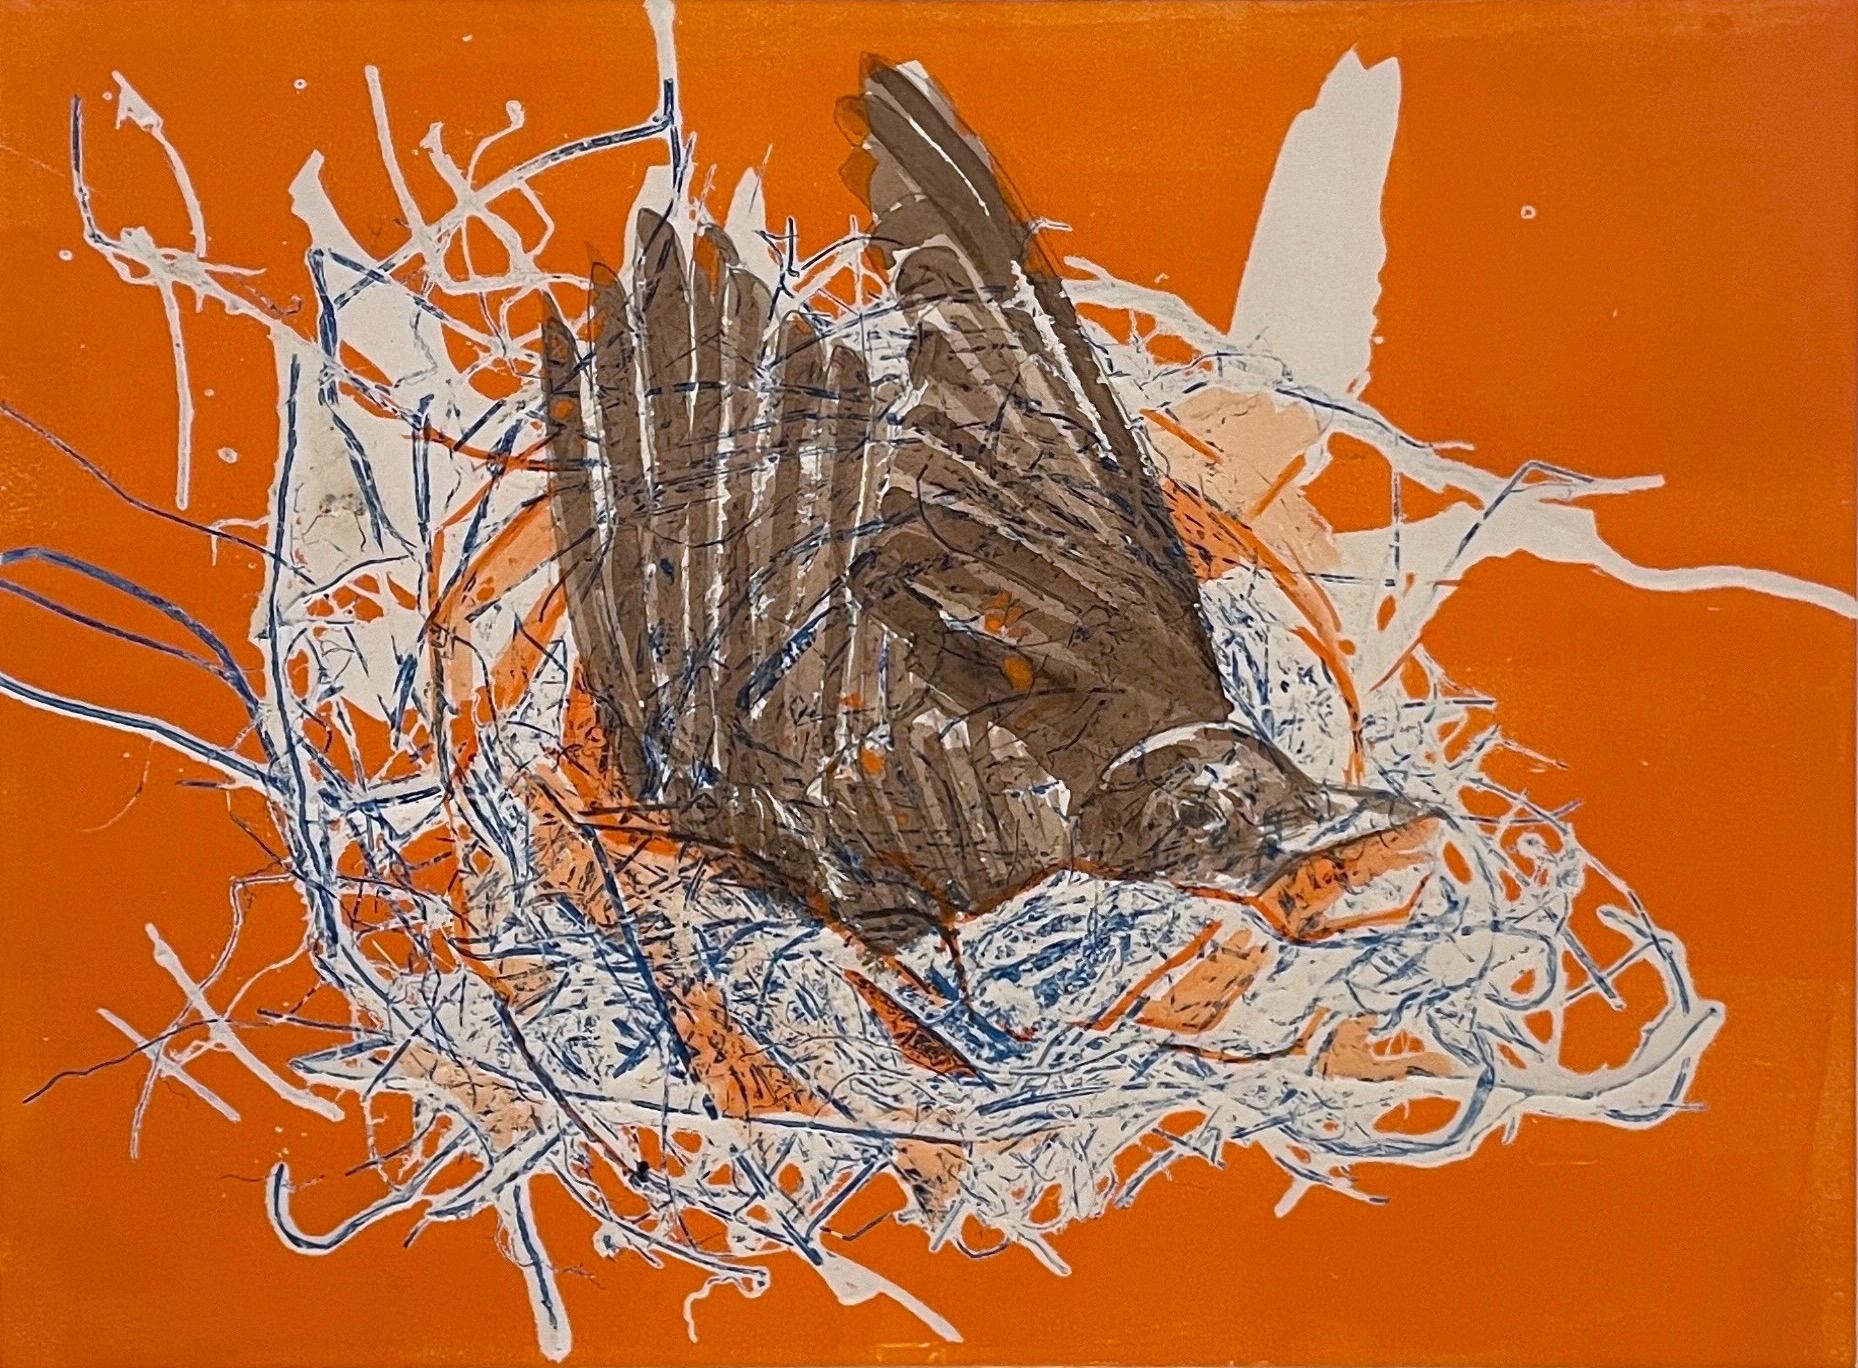 Préparation : peinture monogravée unique en son genre d'oiseau abstrait niché en orange